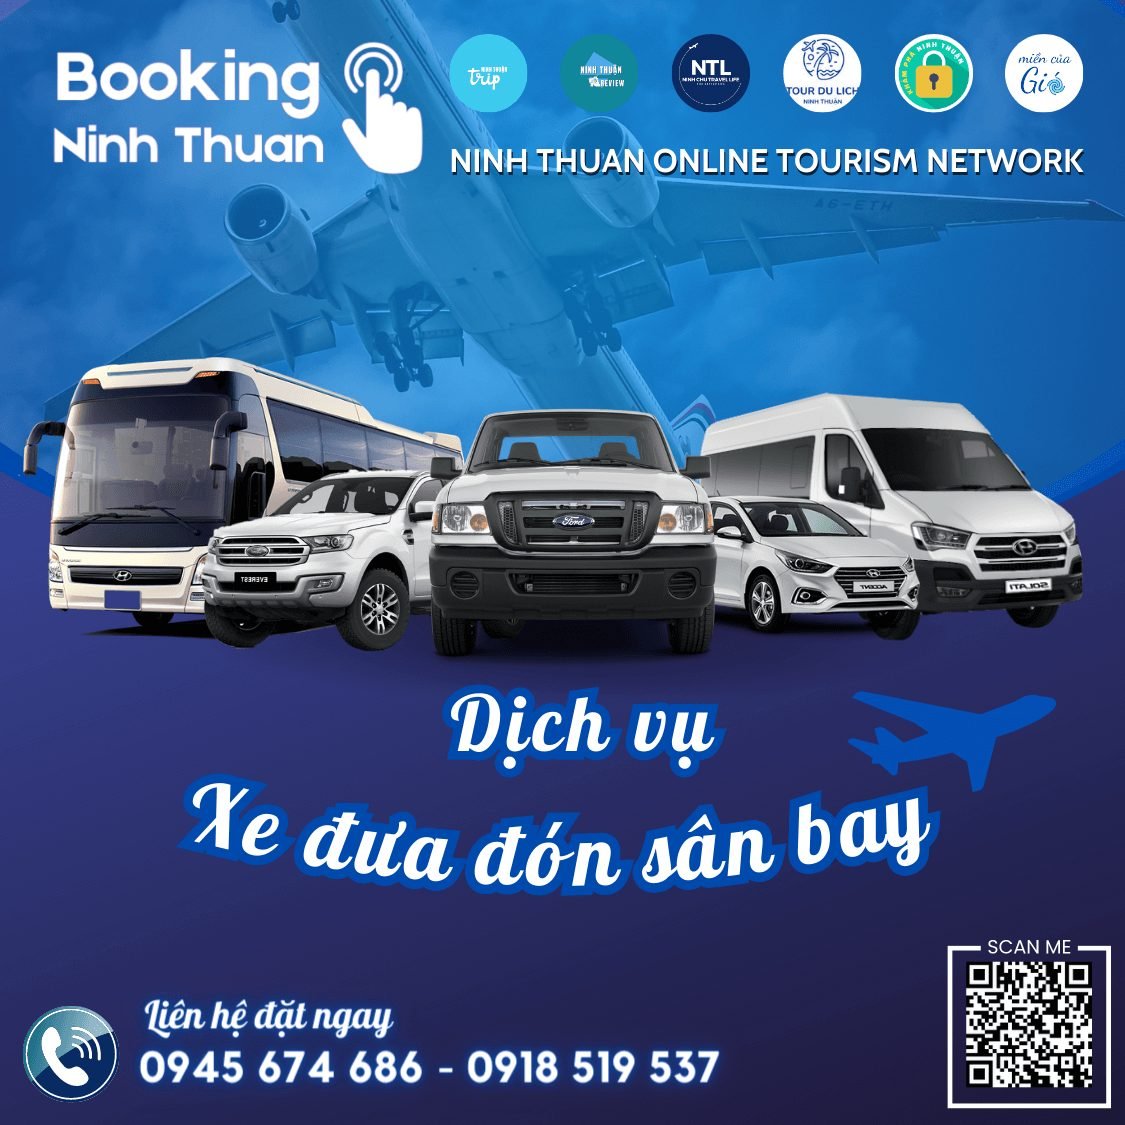 Booking Ninh Thuan là địa chỉ đặt xe đưa đón sân bay Cam Ranh tốt nhất hiện nay. Ảnh: Booking Ninh Thuan